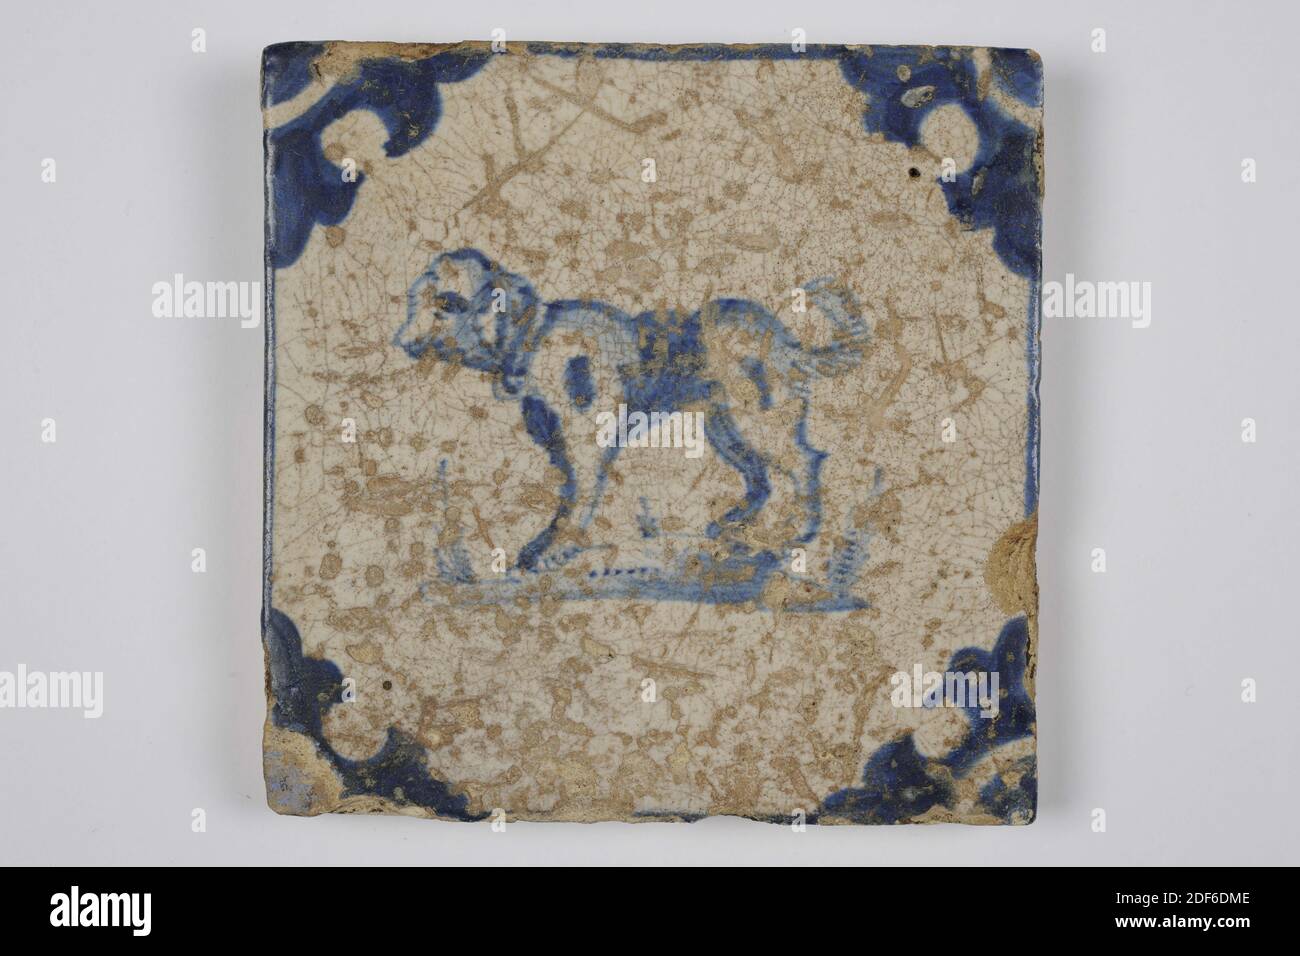 Carreau de mur, Anonyme, entre 1640-1700, glaçure d'étain, faïence, général: 13.2 x 13.2 x 1.1cm (132 x 132 x 11mm), chien, carreau de mur en faïence recouvert de glaçure d'étain et peint en bleu. La mosaïque représente un chien orienté vers la droite au centre. L'animal a les pattes avant du sol et un objet dans la bouche. La tuile a une tête de boeuf comme un motif de coin, 1995 Banque D'Images